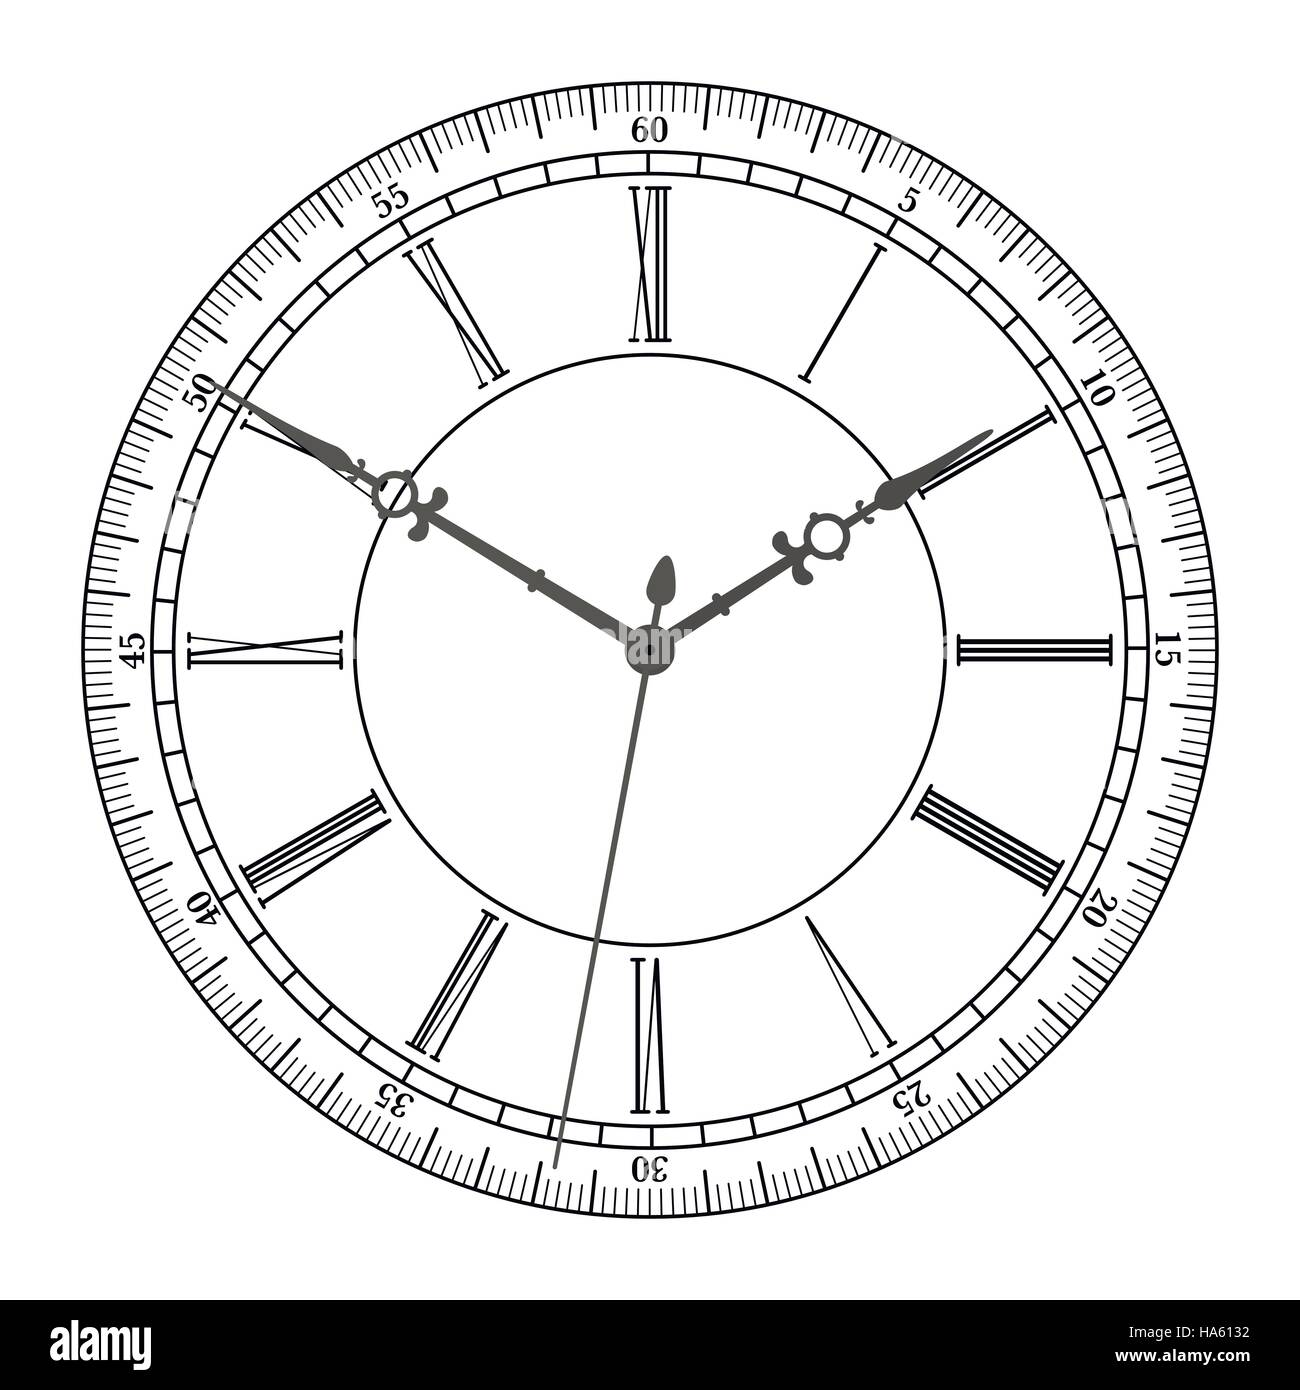 Vector vintage clock Stock Vector